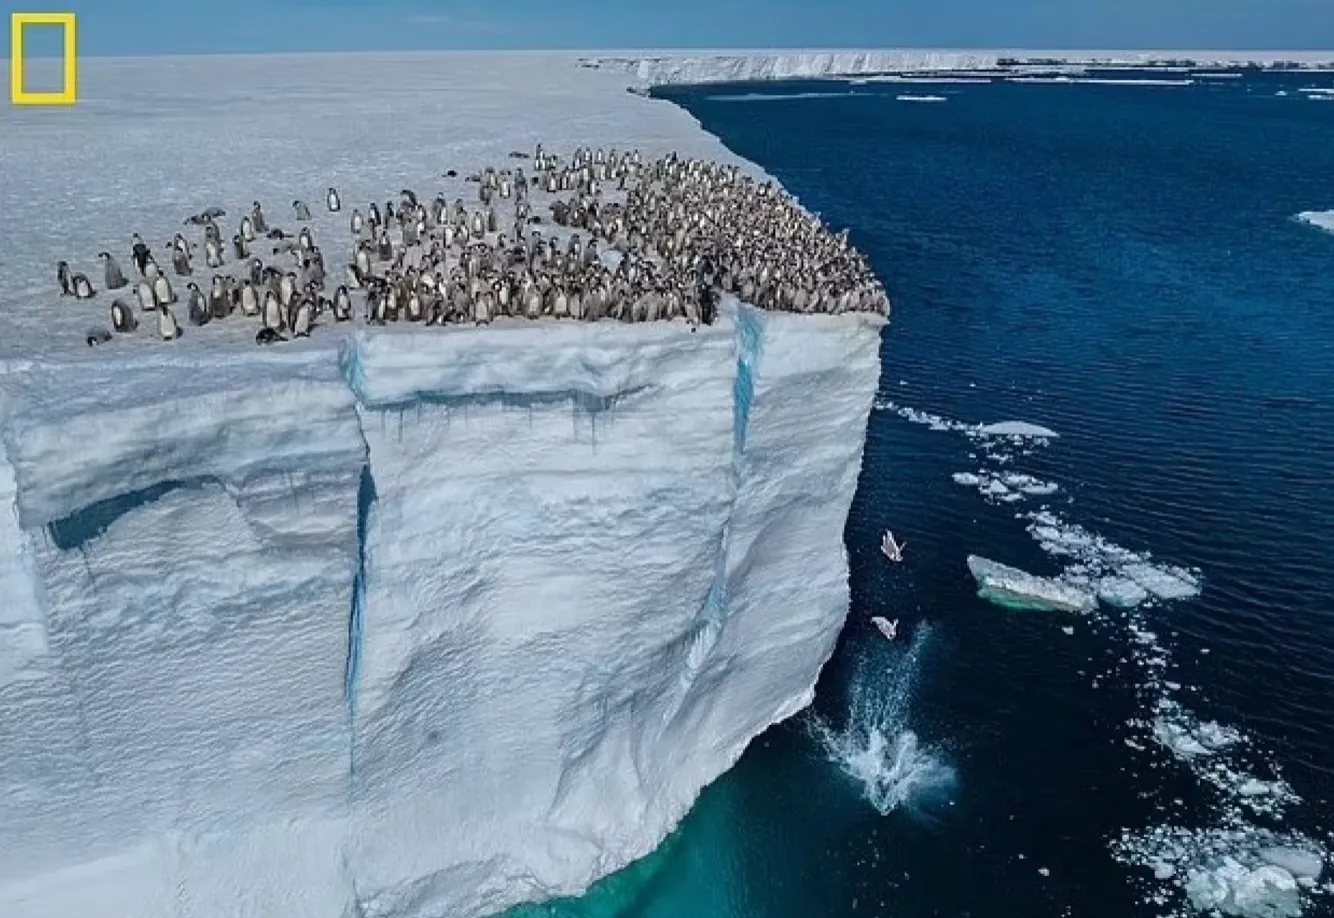 Дитинчата пінгвінів стрибають в океан із висоти 15 метрів